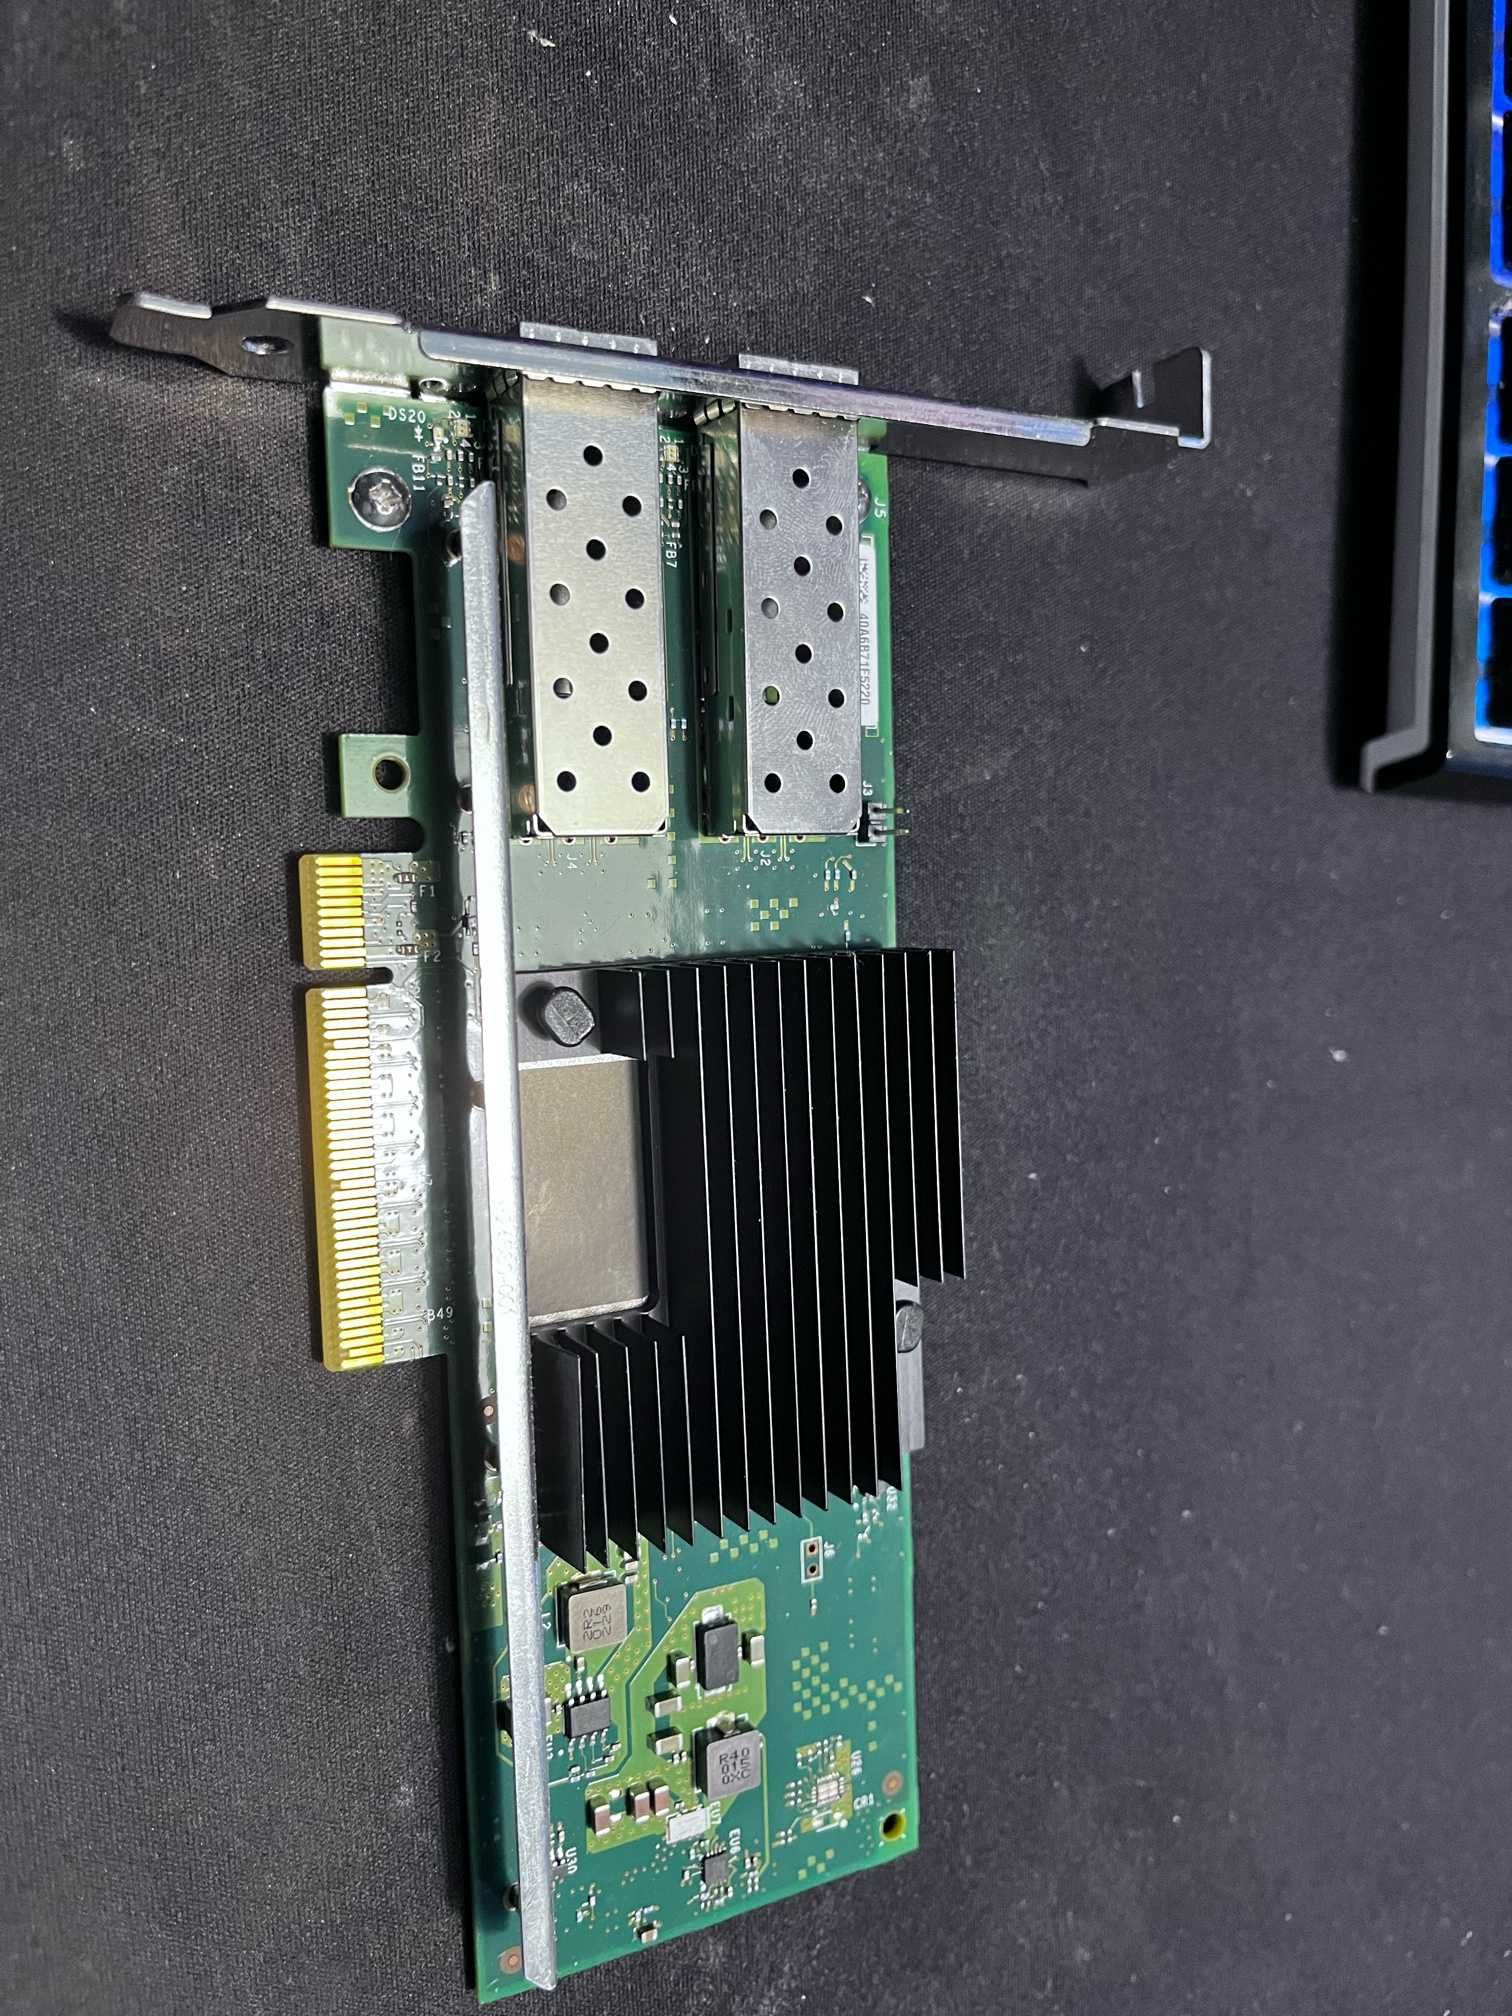 Intel X710-DA2 10G Dual Port PCIe Server NIC 2x SFP+